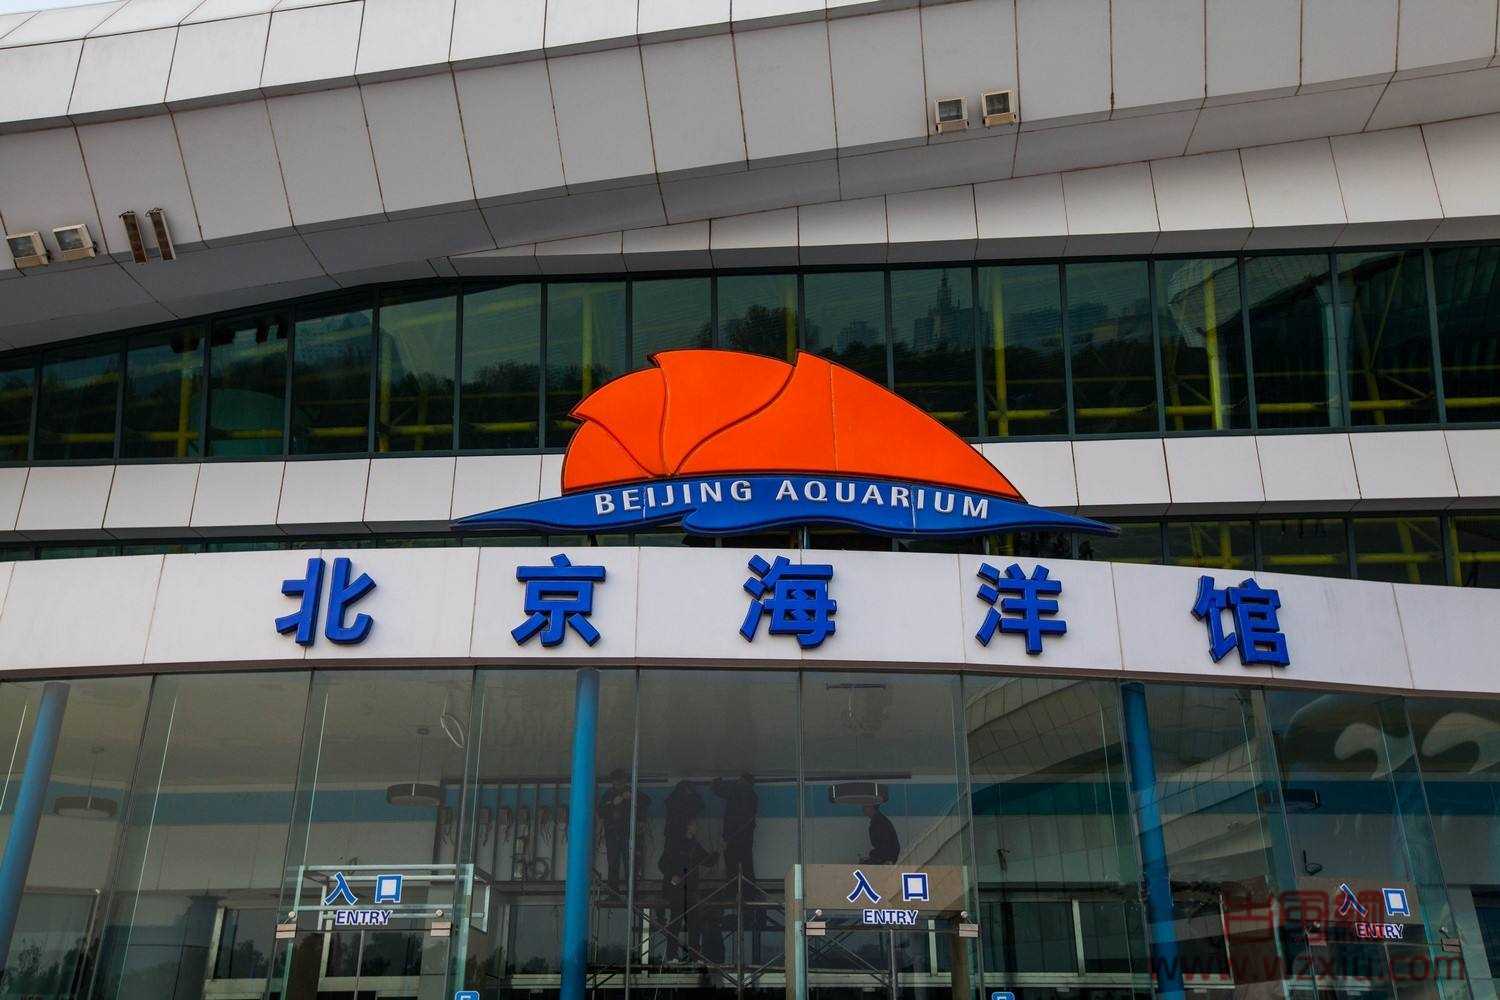 2022北京海洋馆第一季度表演时间和开闭馆时间